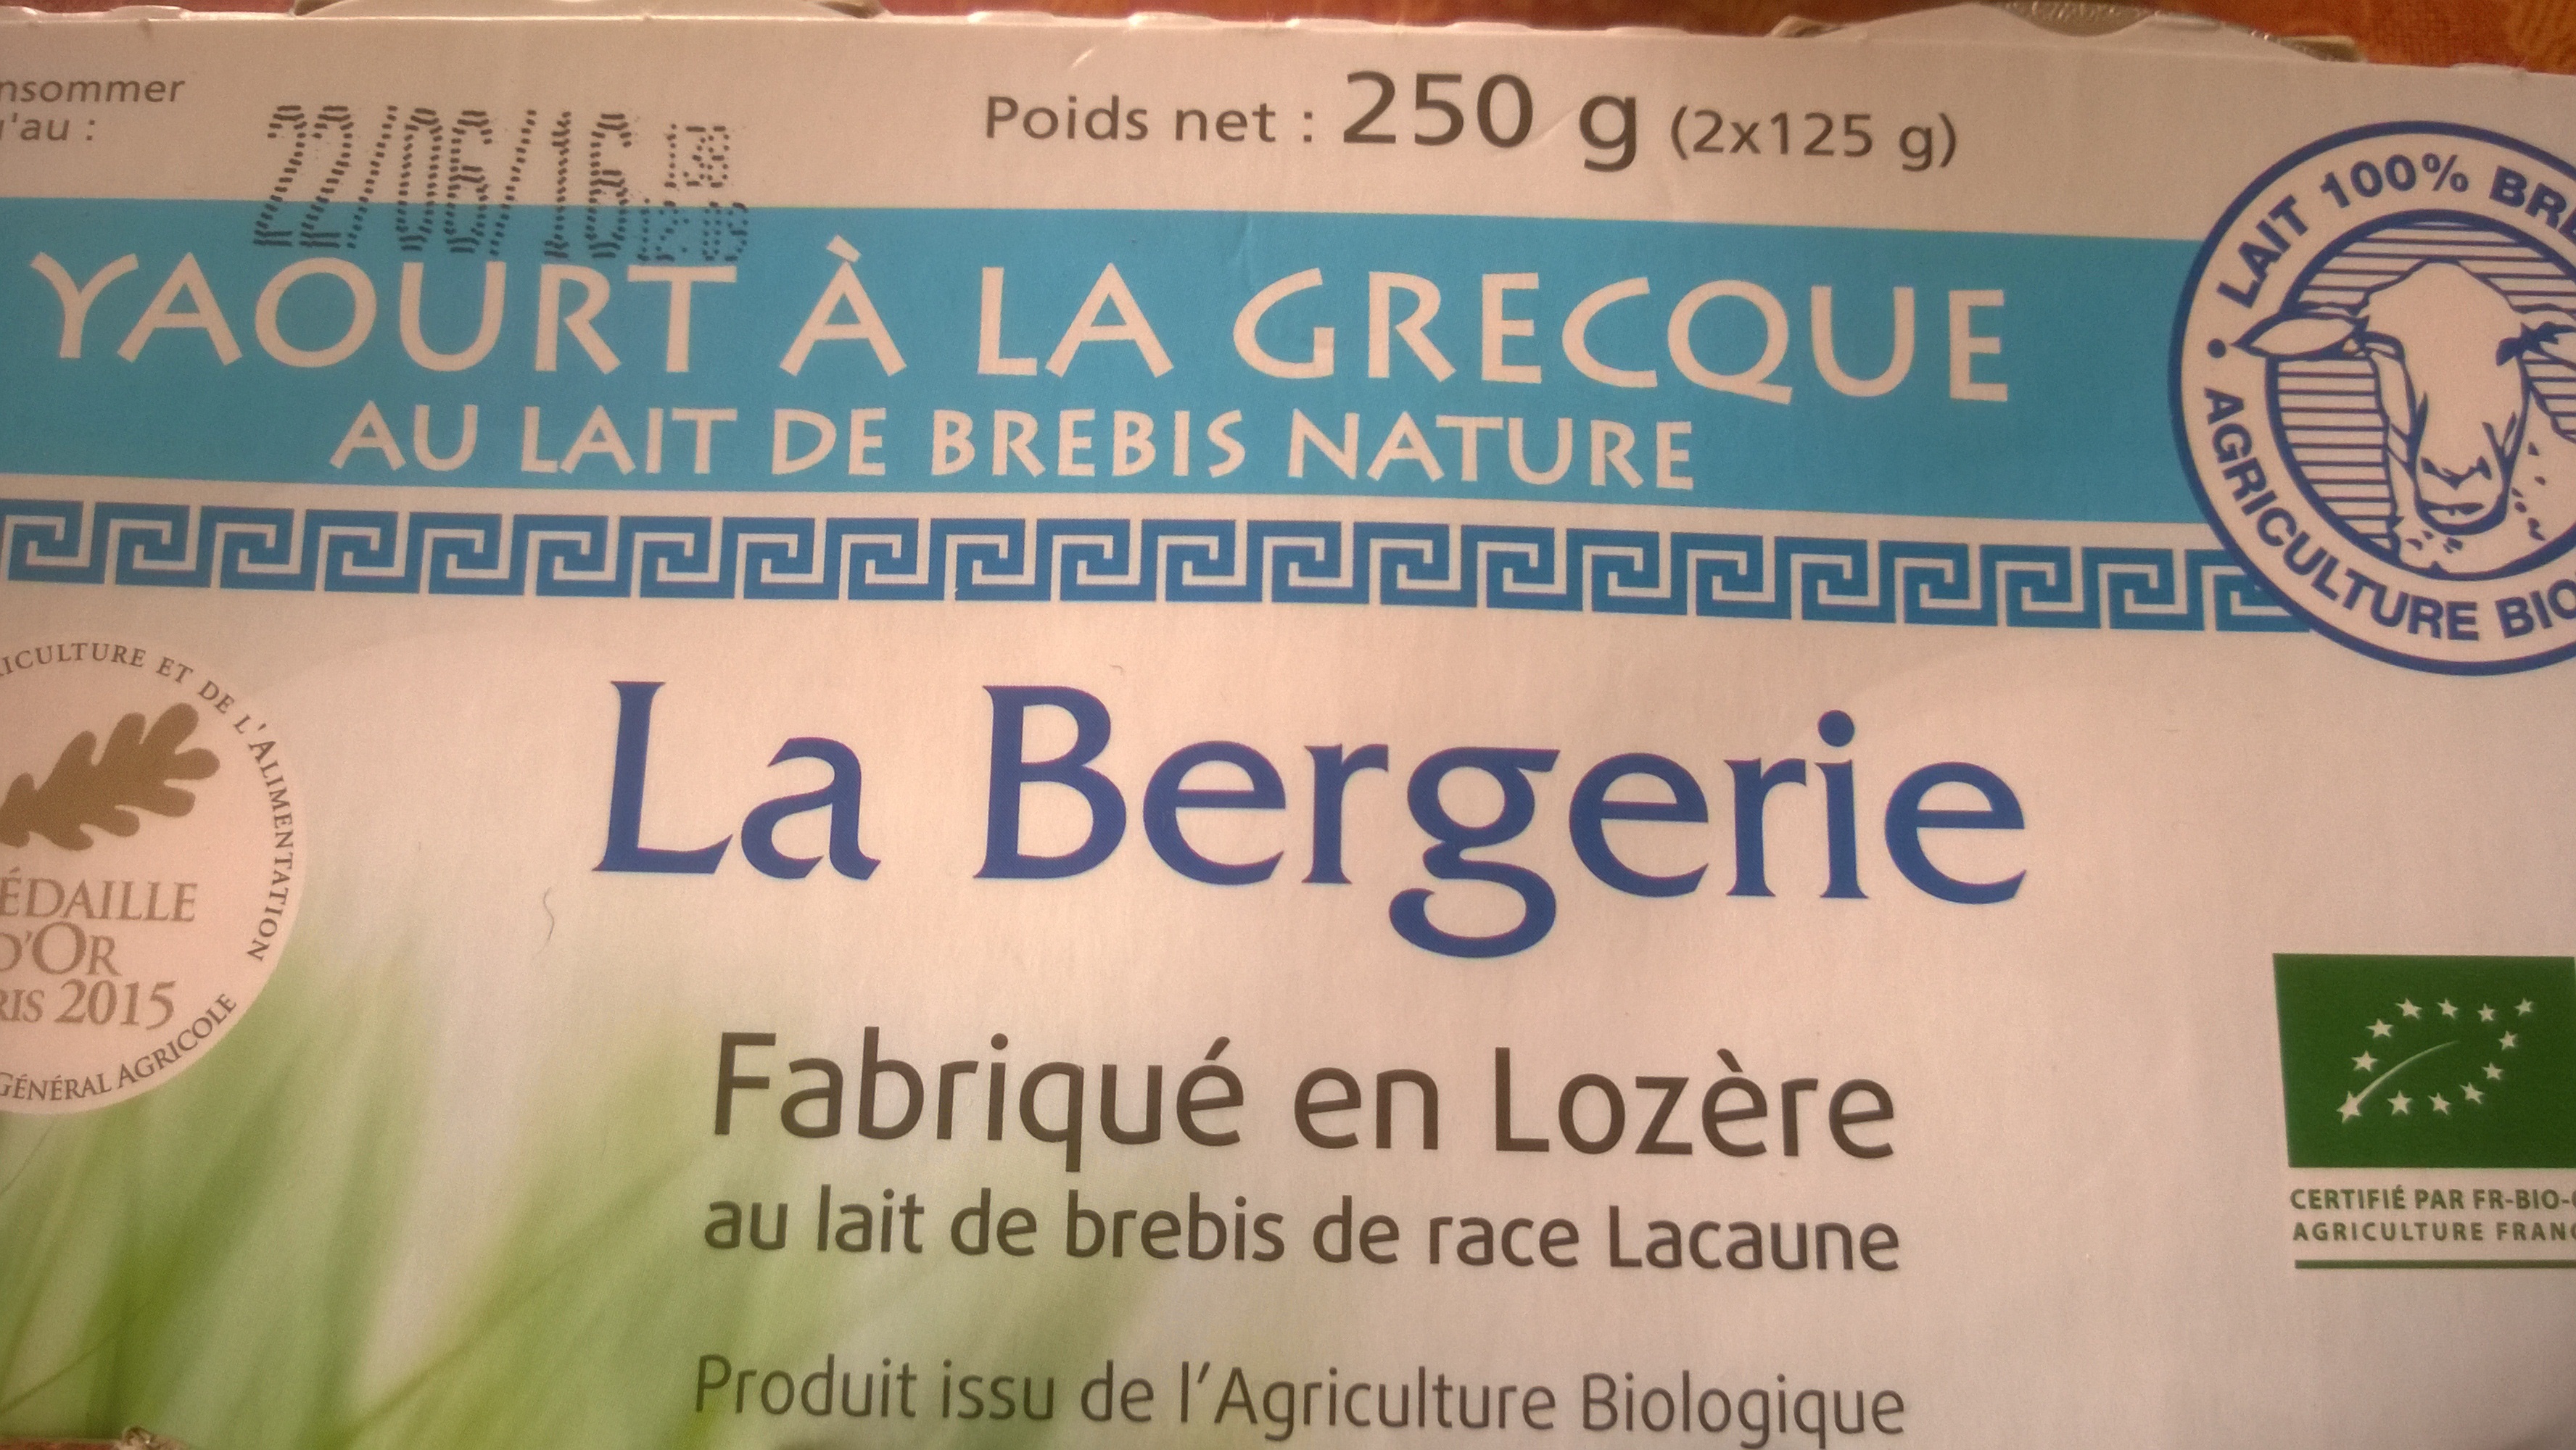 YAOURT a LA GRECQUE BREBIS NATURE - Product - fr